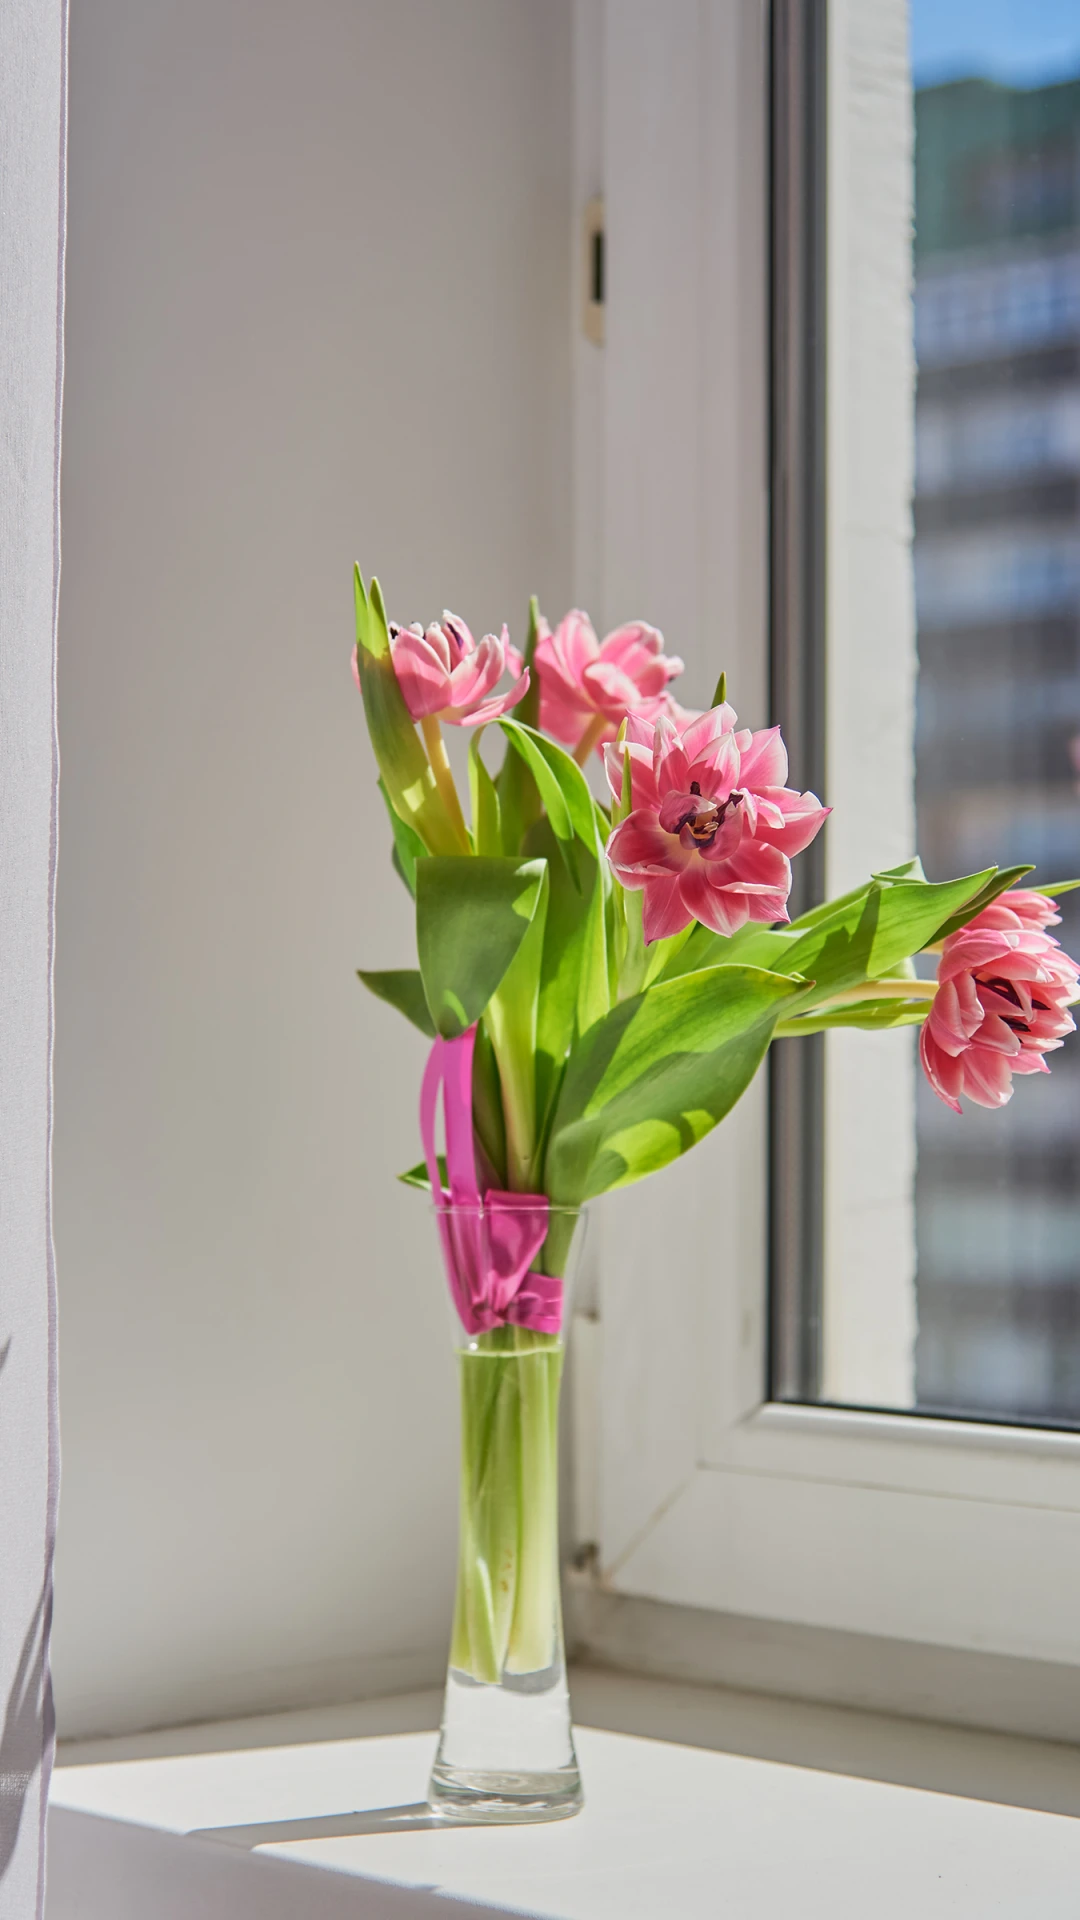 美丽的花朵 iphone苹果手机竖屏 高清桌面壁纸-PixStock 源像素